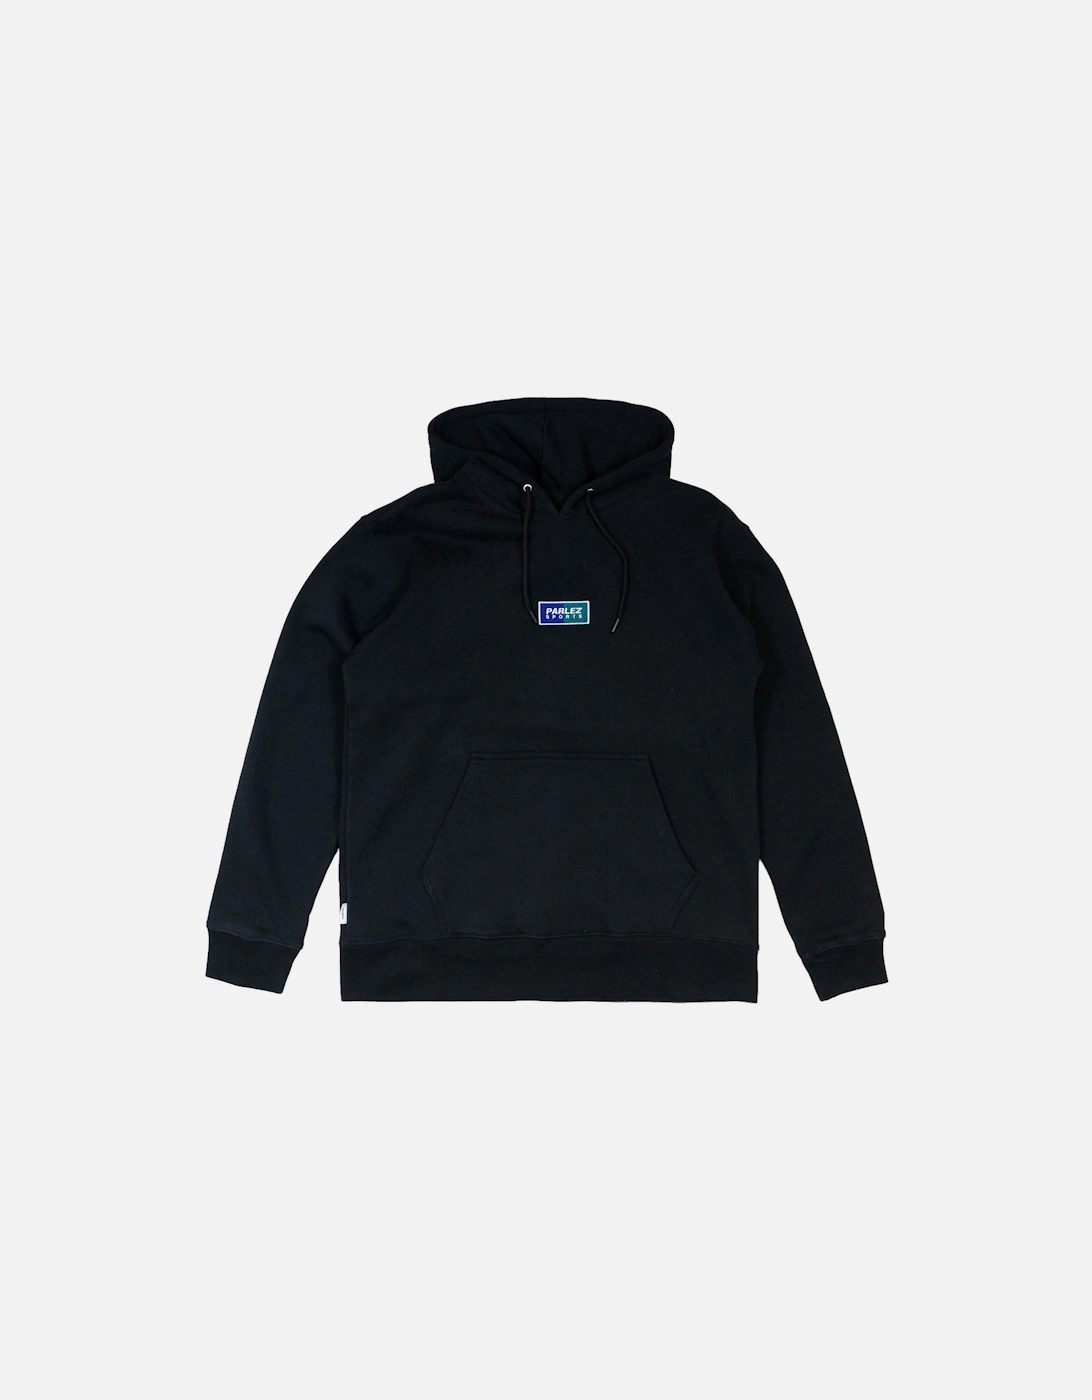 Kuff Hooded Sweatshirt - Black, 3 of 2